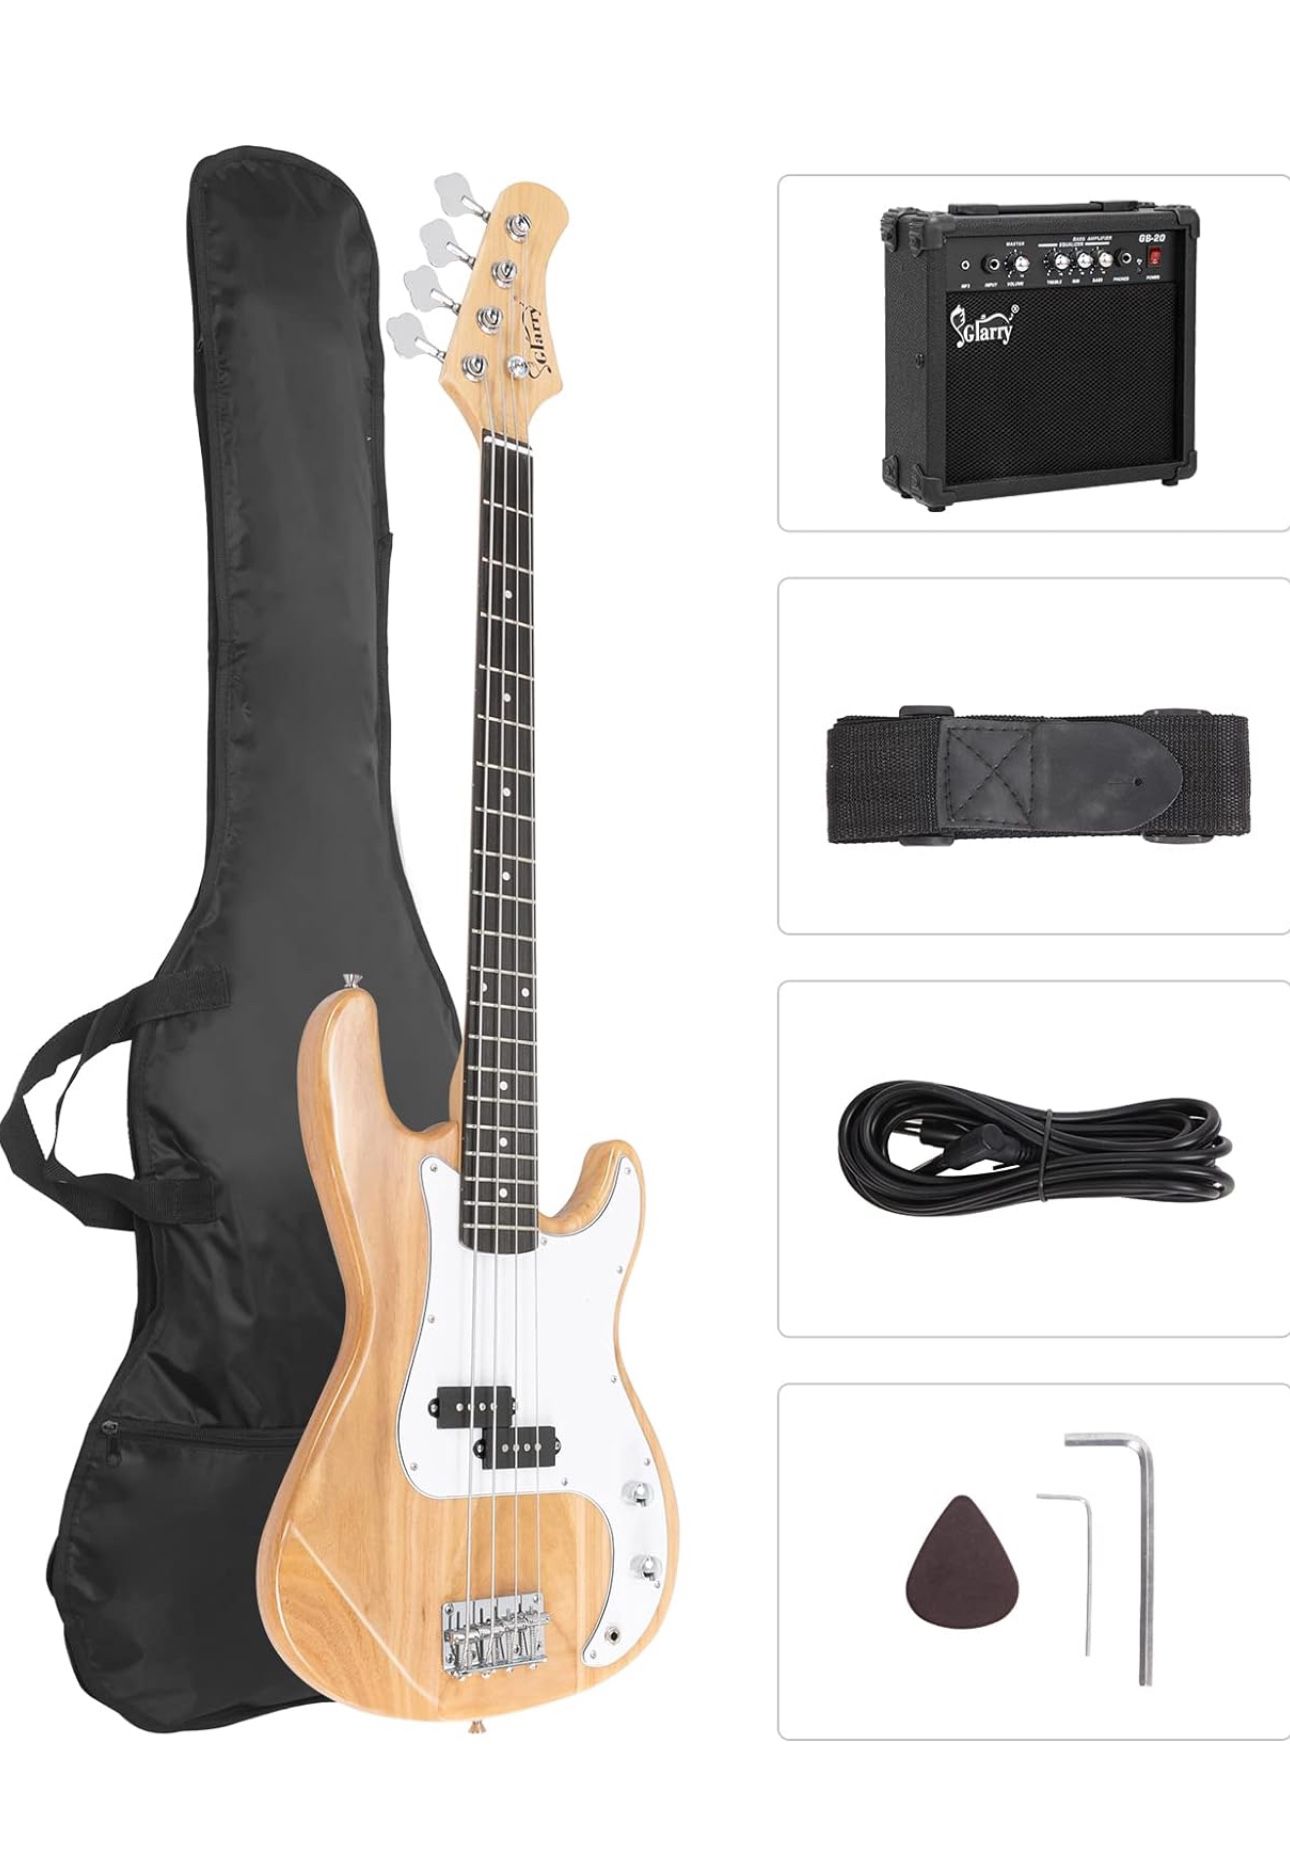 Brand new Bass Guitar 